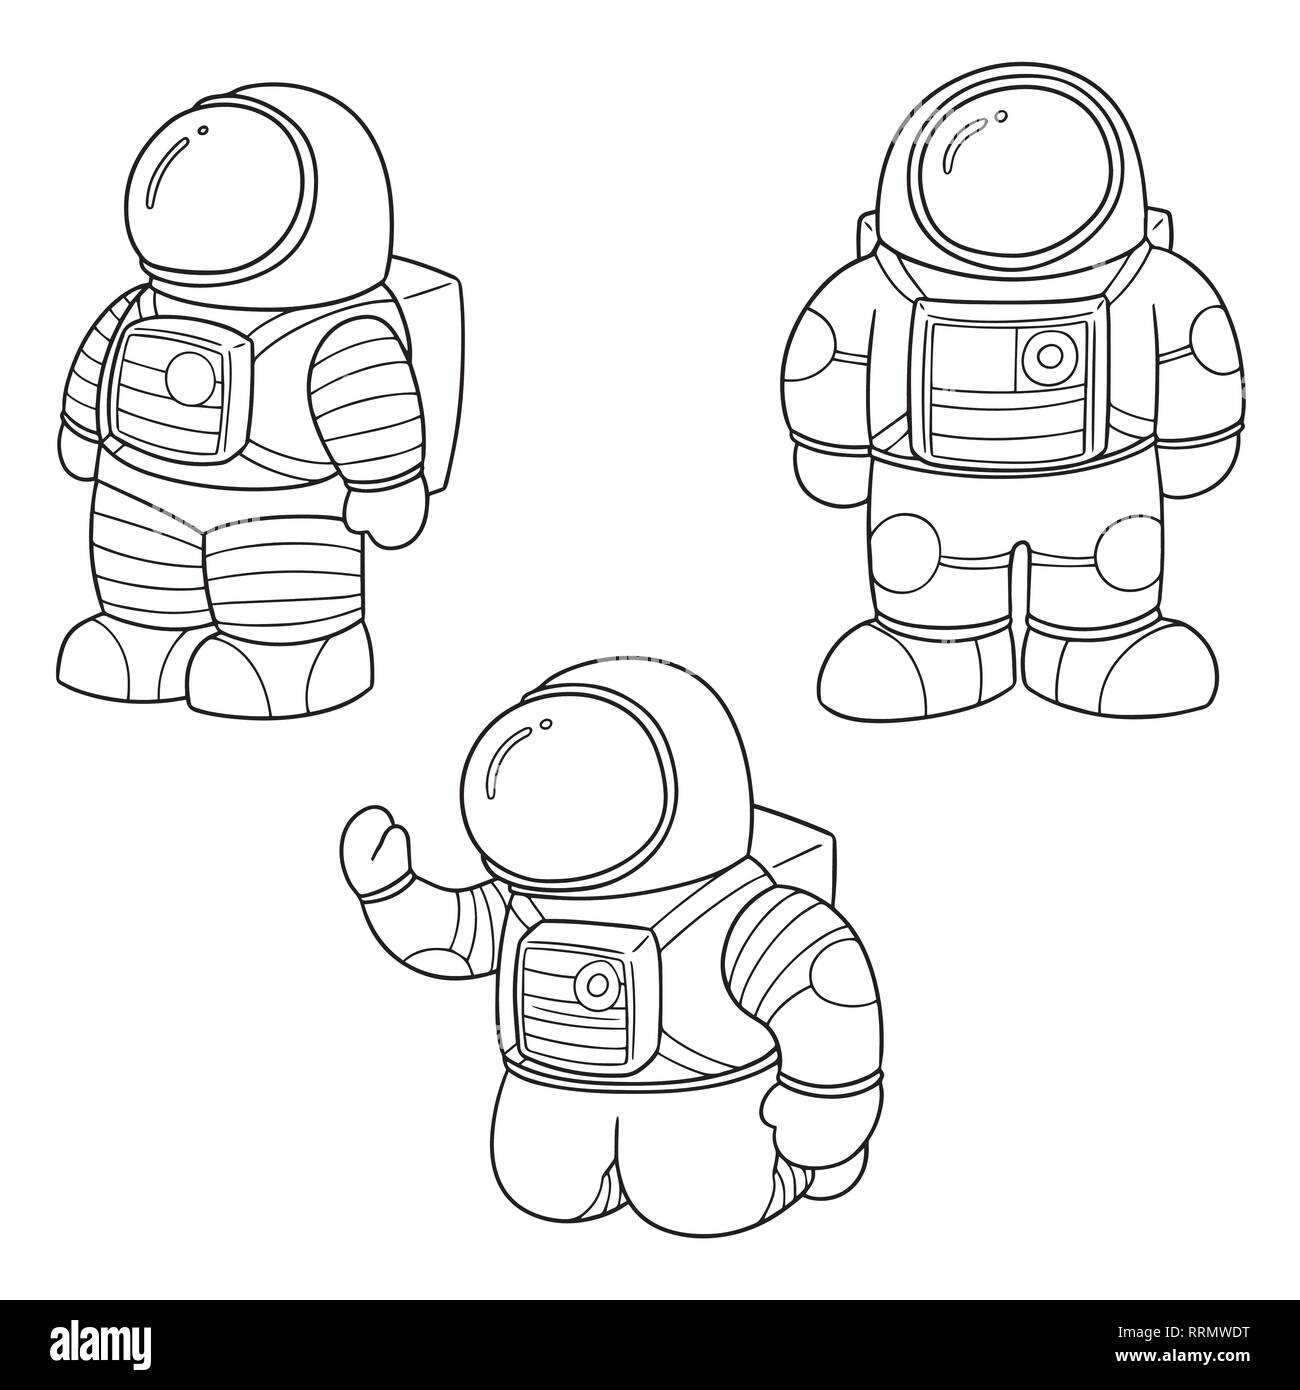 Шаблон шлема космонавта для распечатки. Космонавт раскраска для детей. Космонавт картинка для детей раскраска. Космонавт рисунок для детей. Раскраска Космонавта в скафандре для детей.